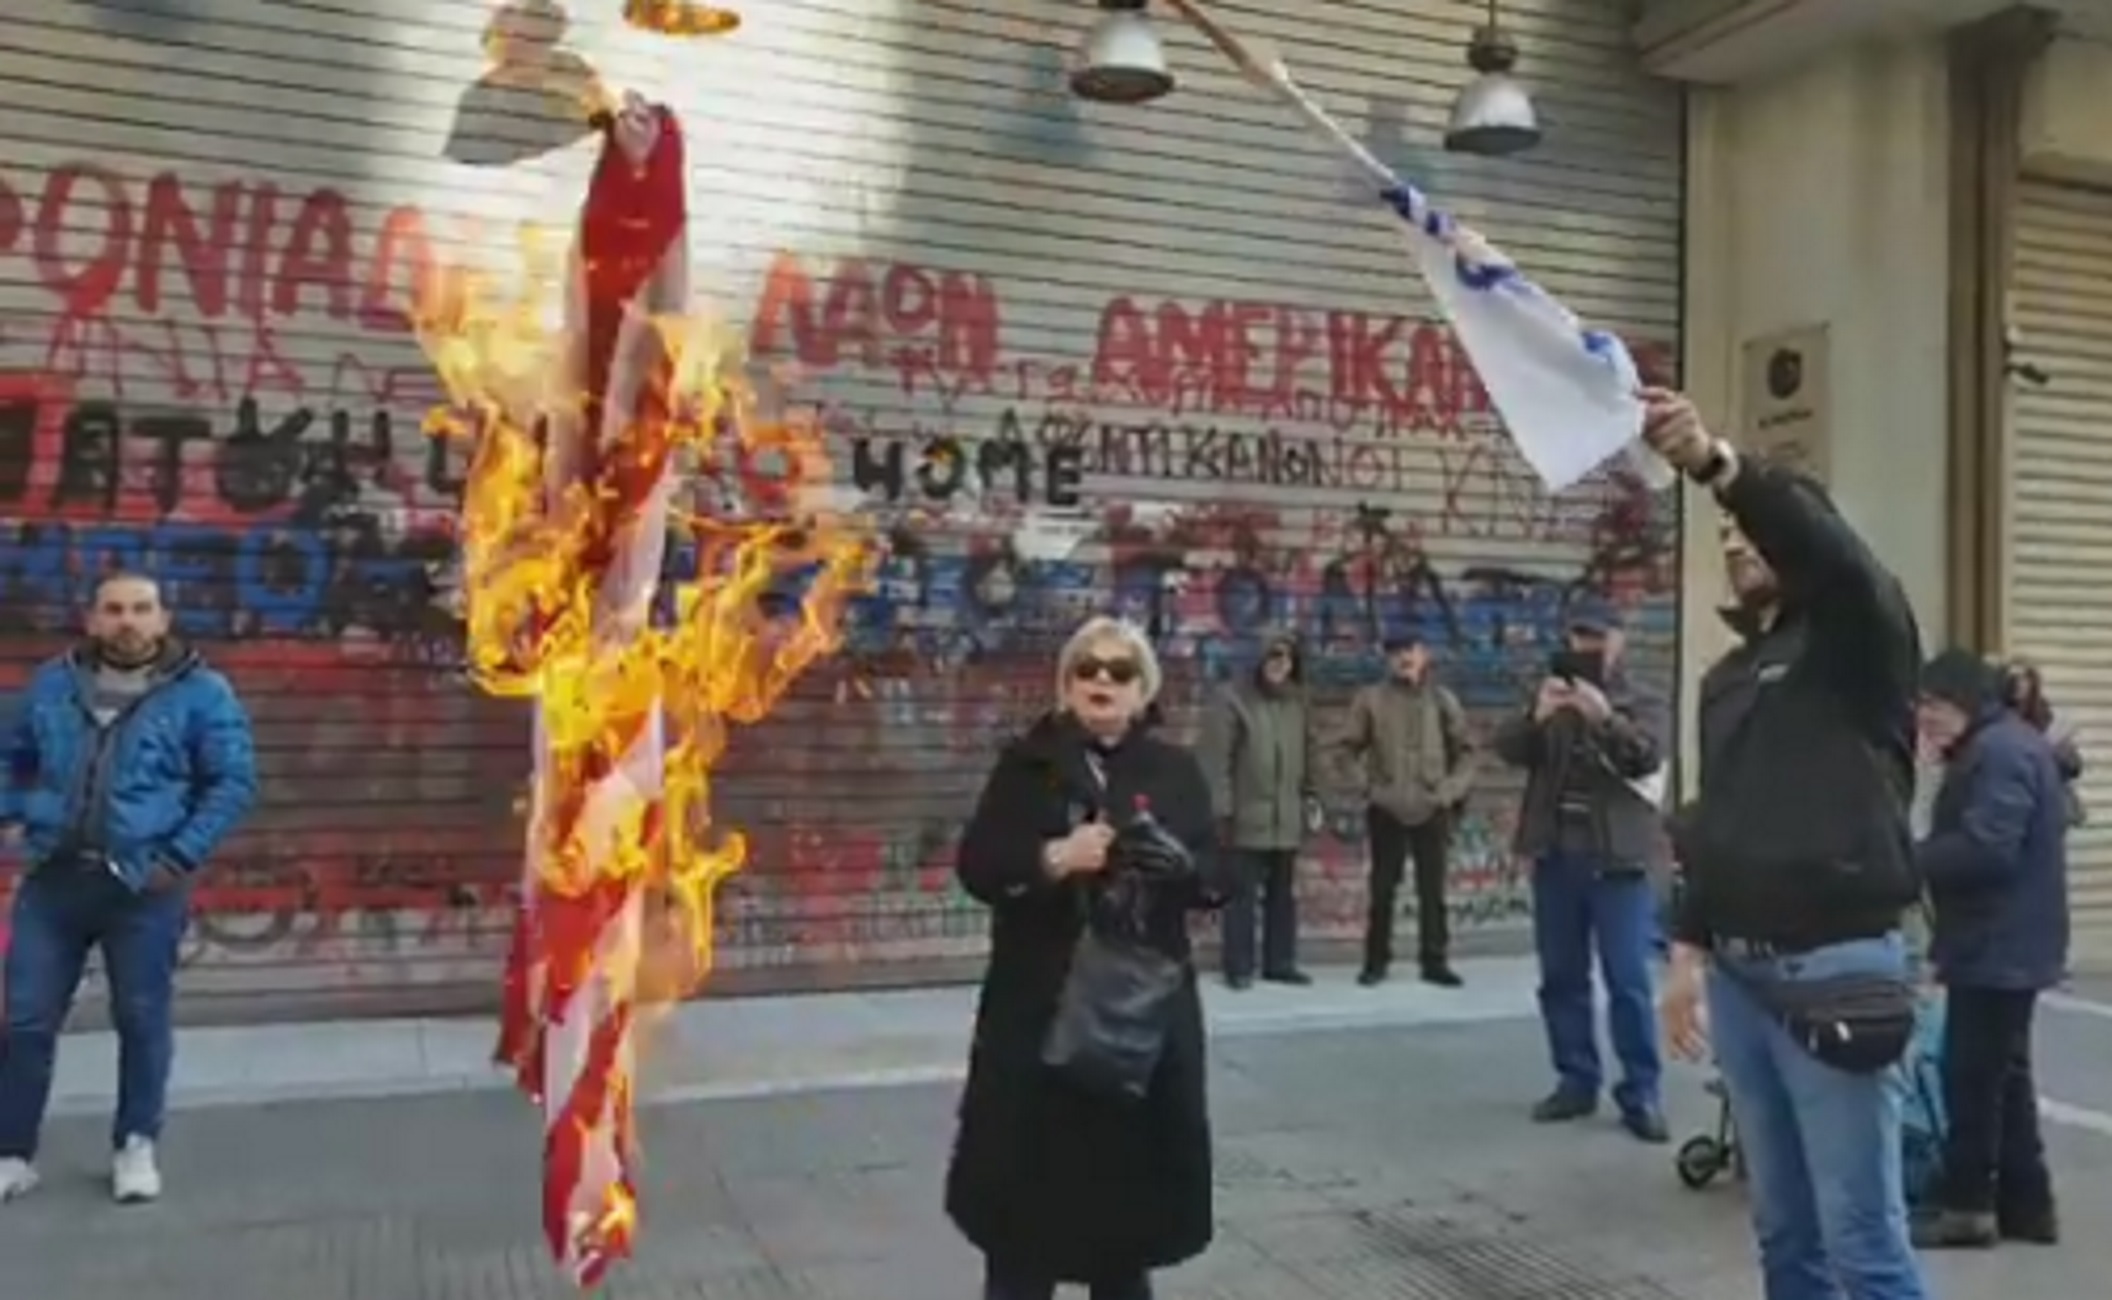 Θεσσαλονίκη: Έκαψαν σημαία των ΗΠΑ έξω από το αμερικανικό προξενείο για τα γεγονότα στη Μέσα Ανατολή [video]